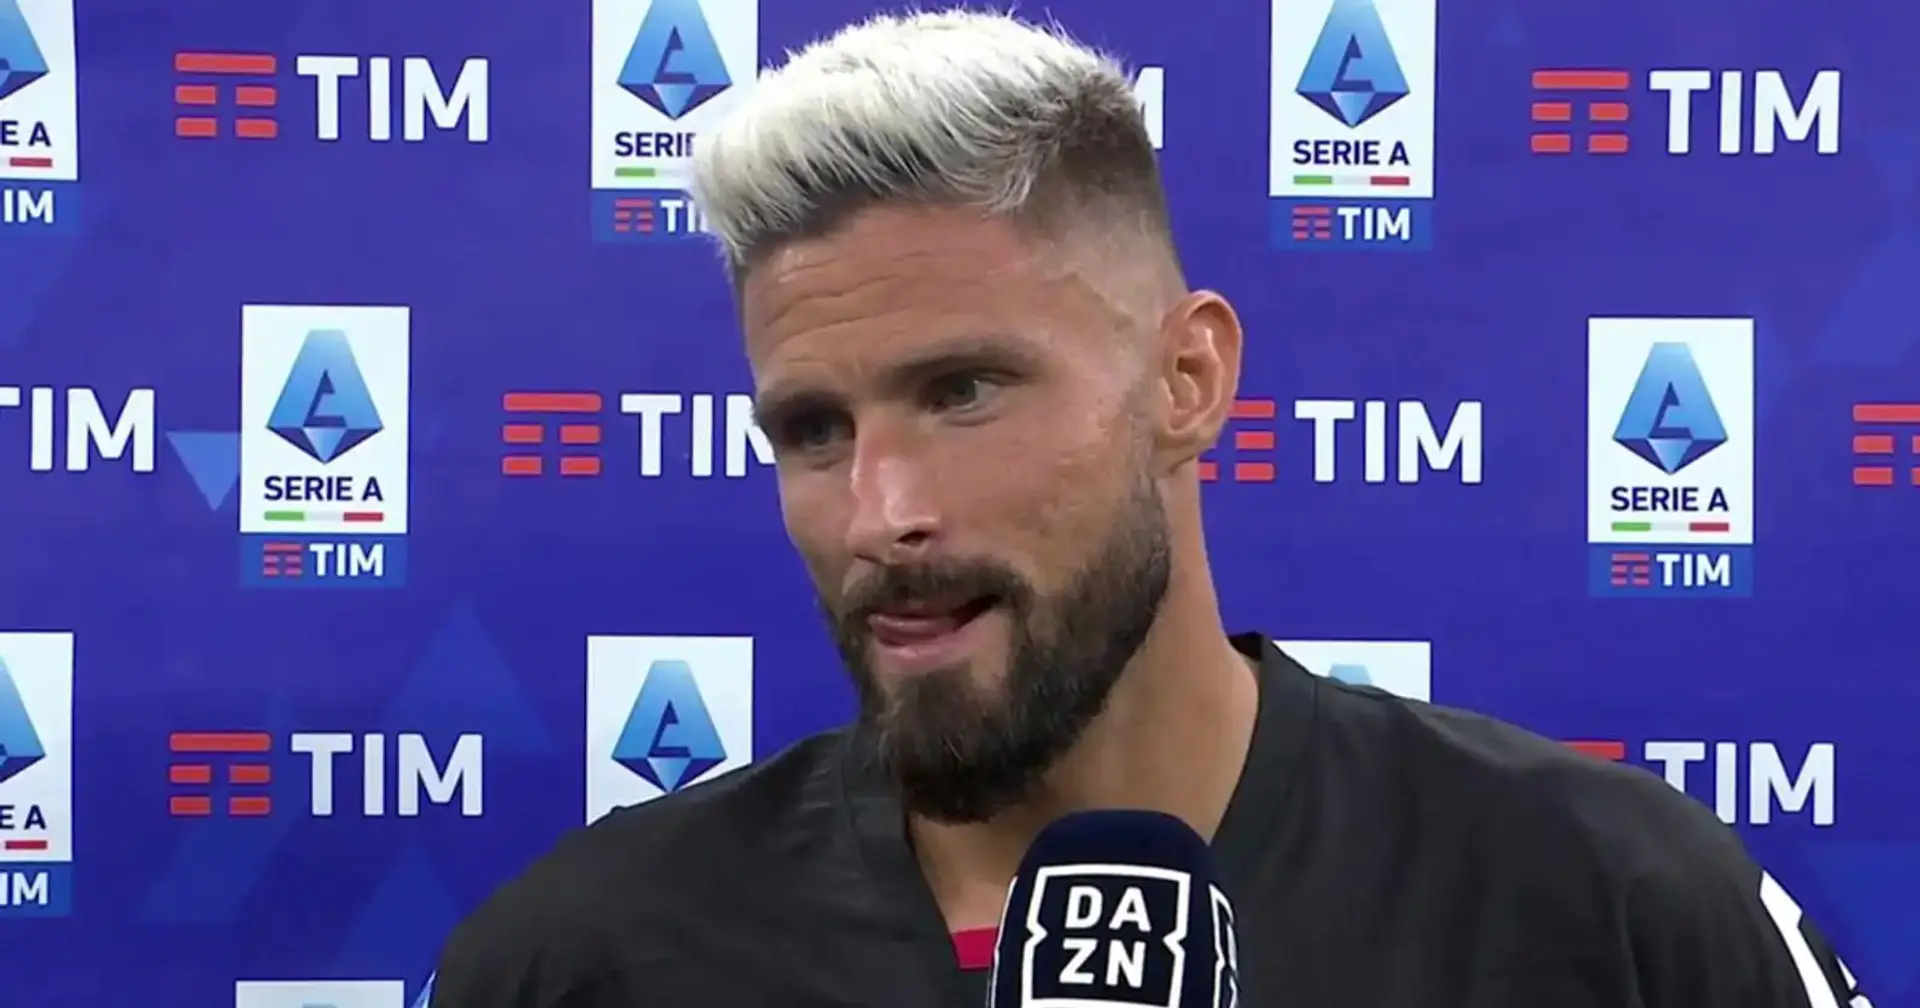 "Sono milanista, vecchio cuore rossonero": Giroud spegne i rumors sull'adido e svela i 2 obiettivi del Milan